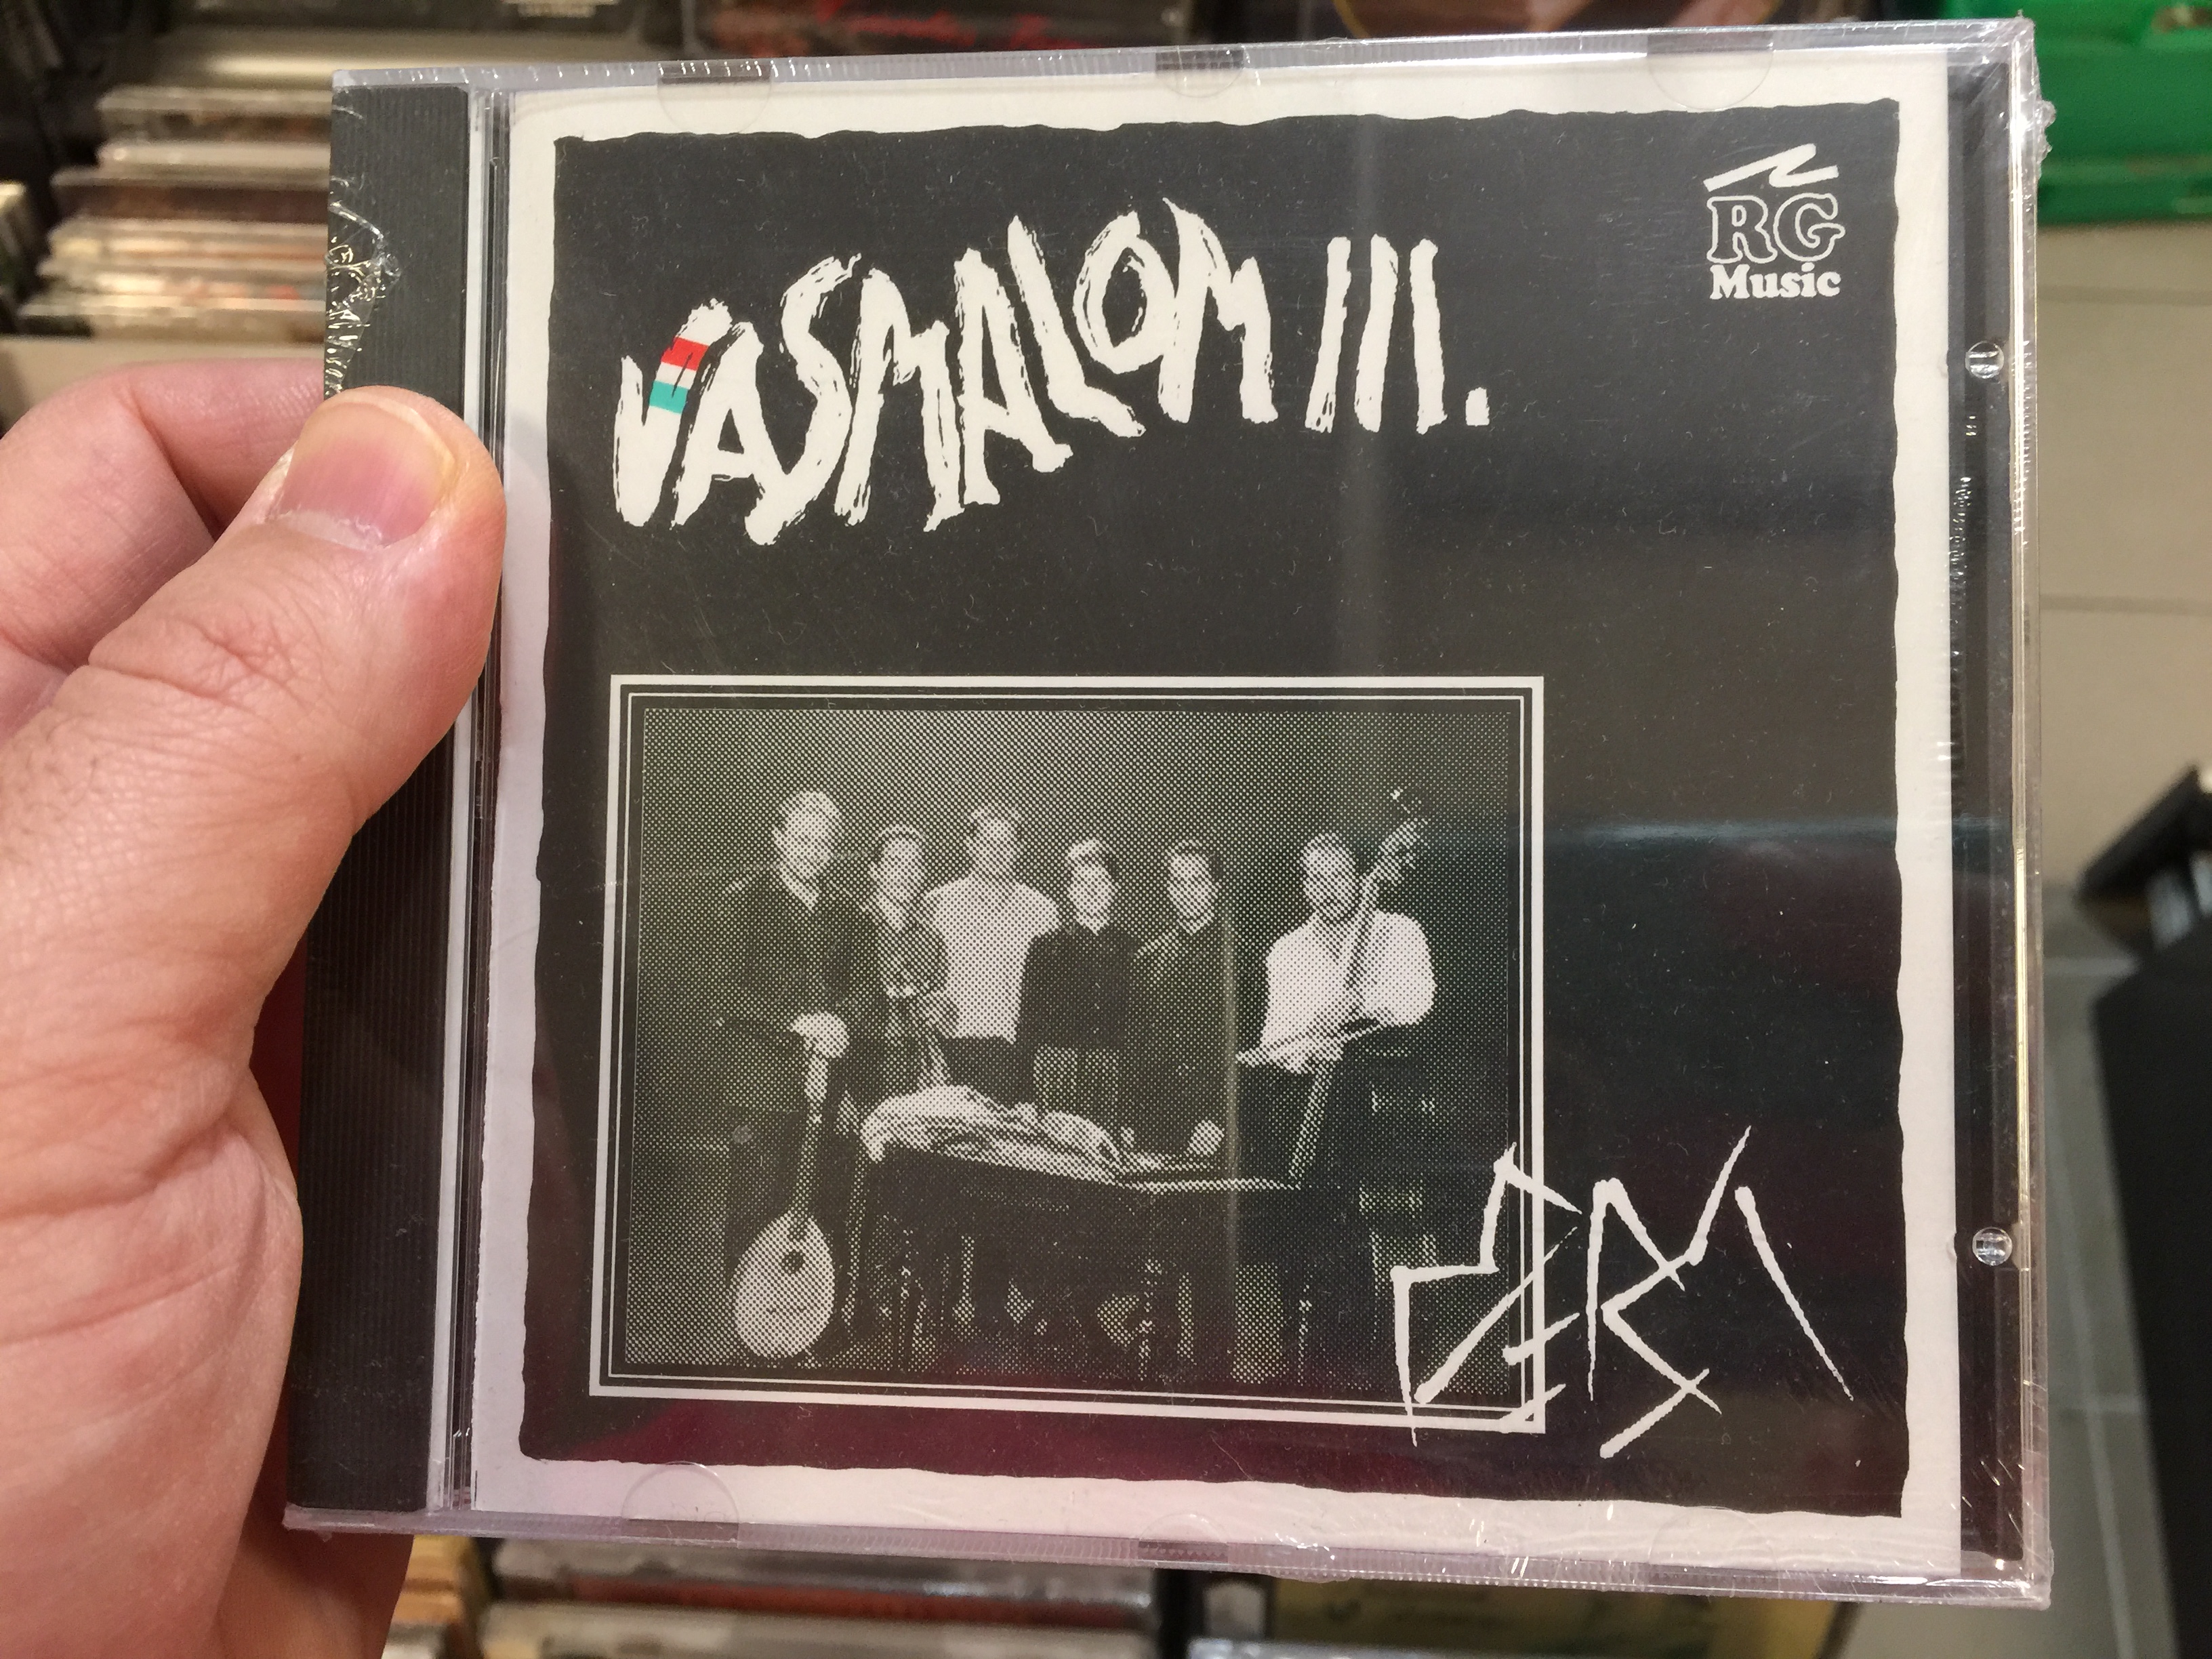 vasmalom-iii.-rg-music-audio-cd-1996-cd-17001-1-.jpg